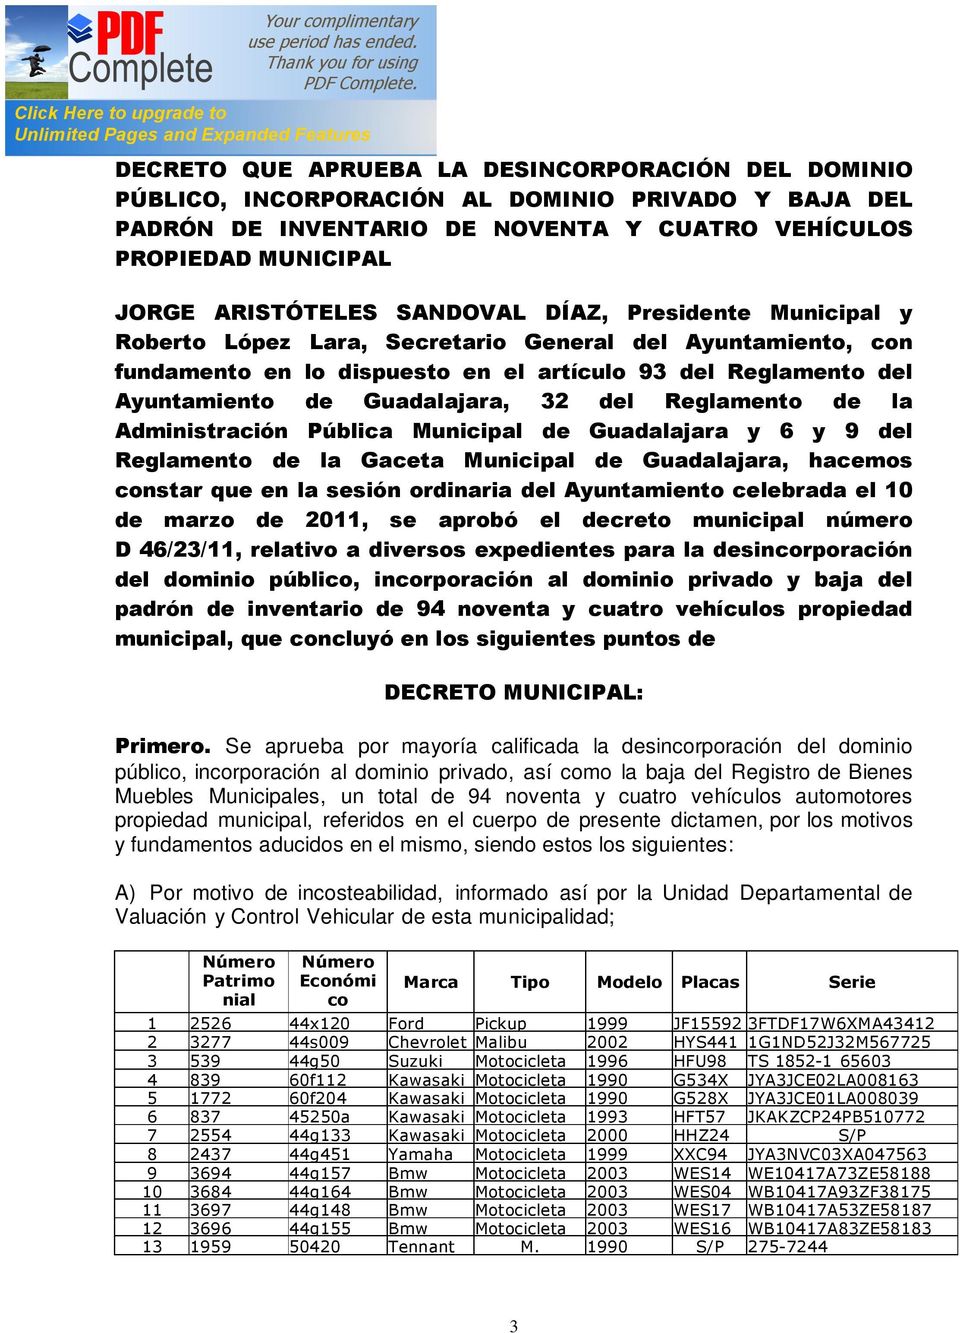 Reglamento de la Administración Pública Municipal de Guadalajara y 6 y 9 del Reglamento de la Gaceta Municipal de Guadalajara, hacemos constar que en la sesión ordinaria del Ayuntamiento celebrada el